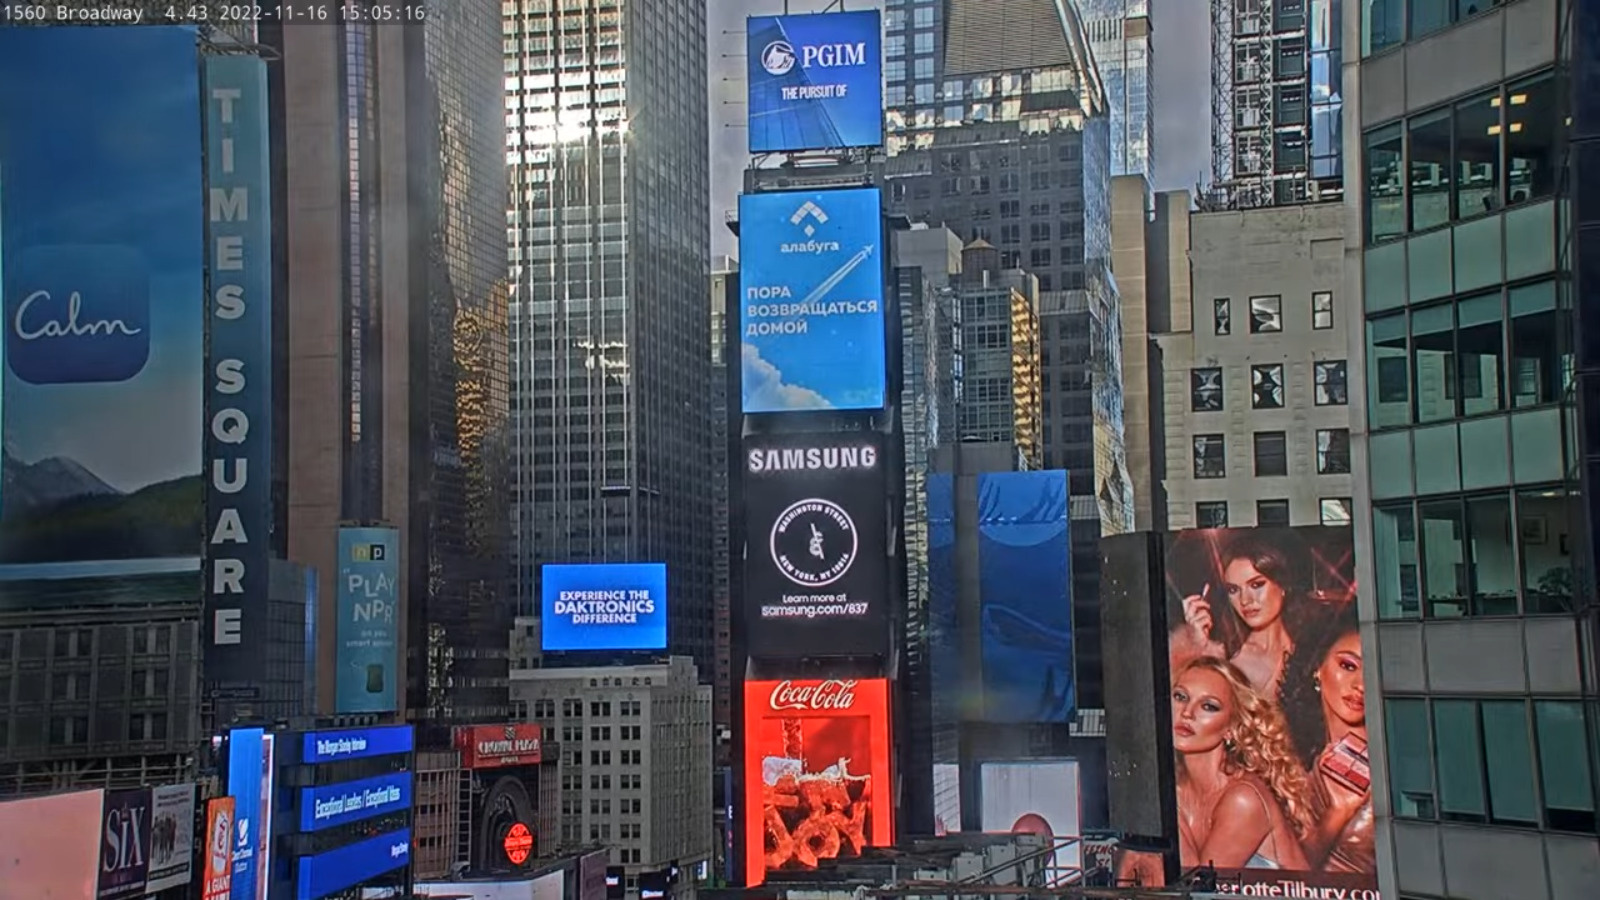 «Пора возвращаться домой»: татарстанская «Алабуга» разместила рекламу на Таймс-сквер в Нью-Йорке